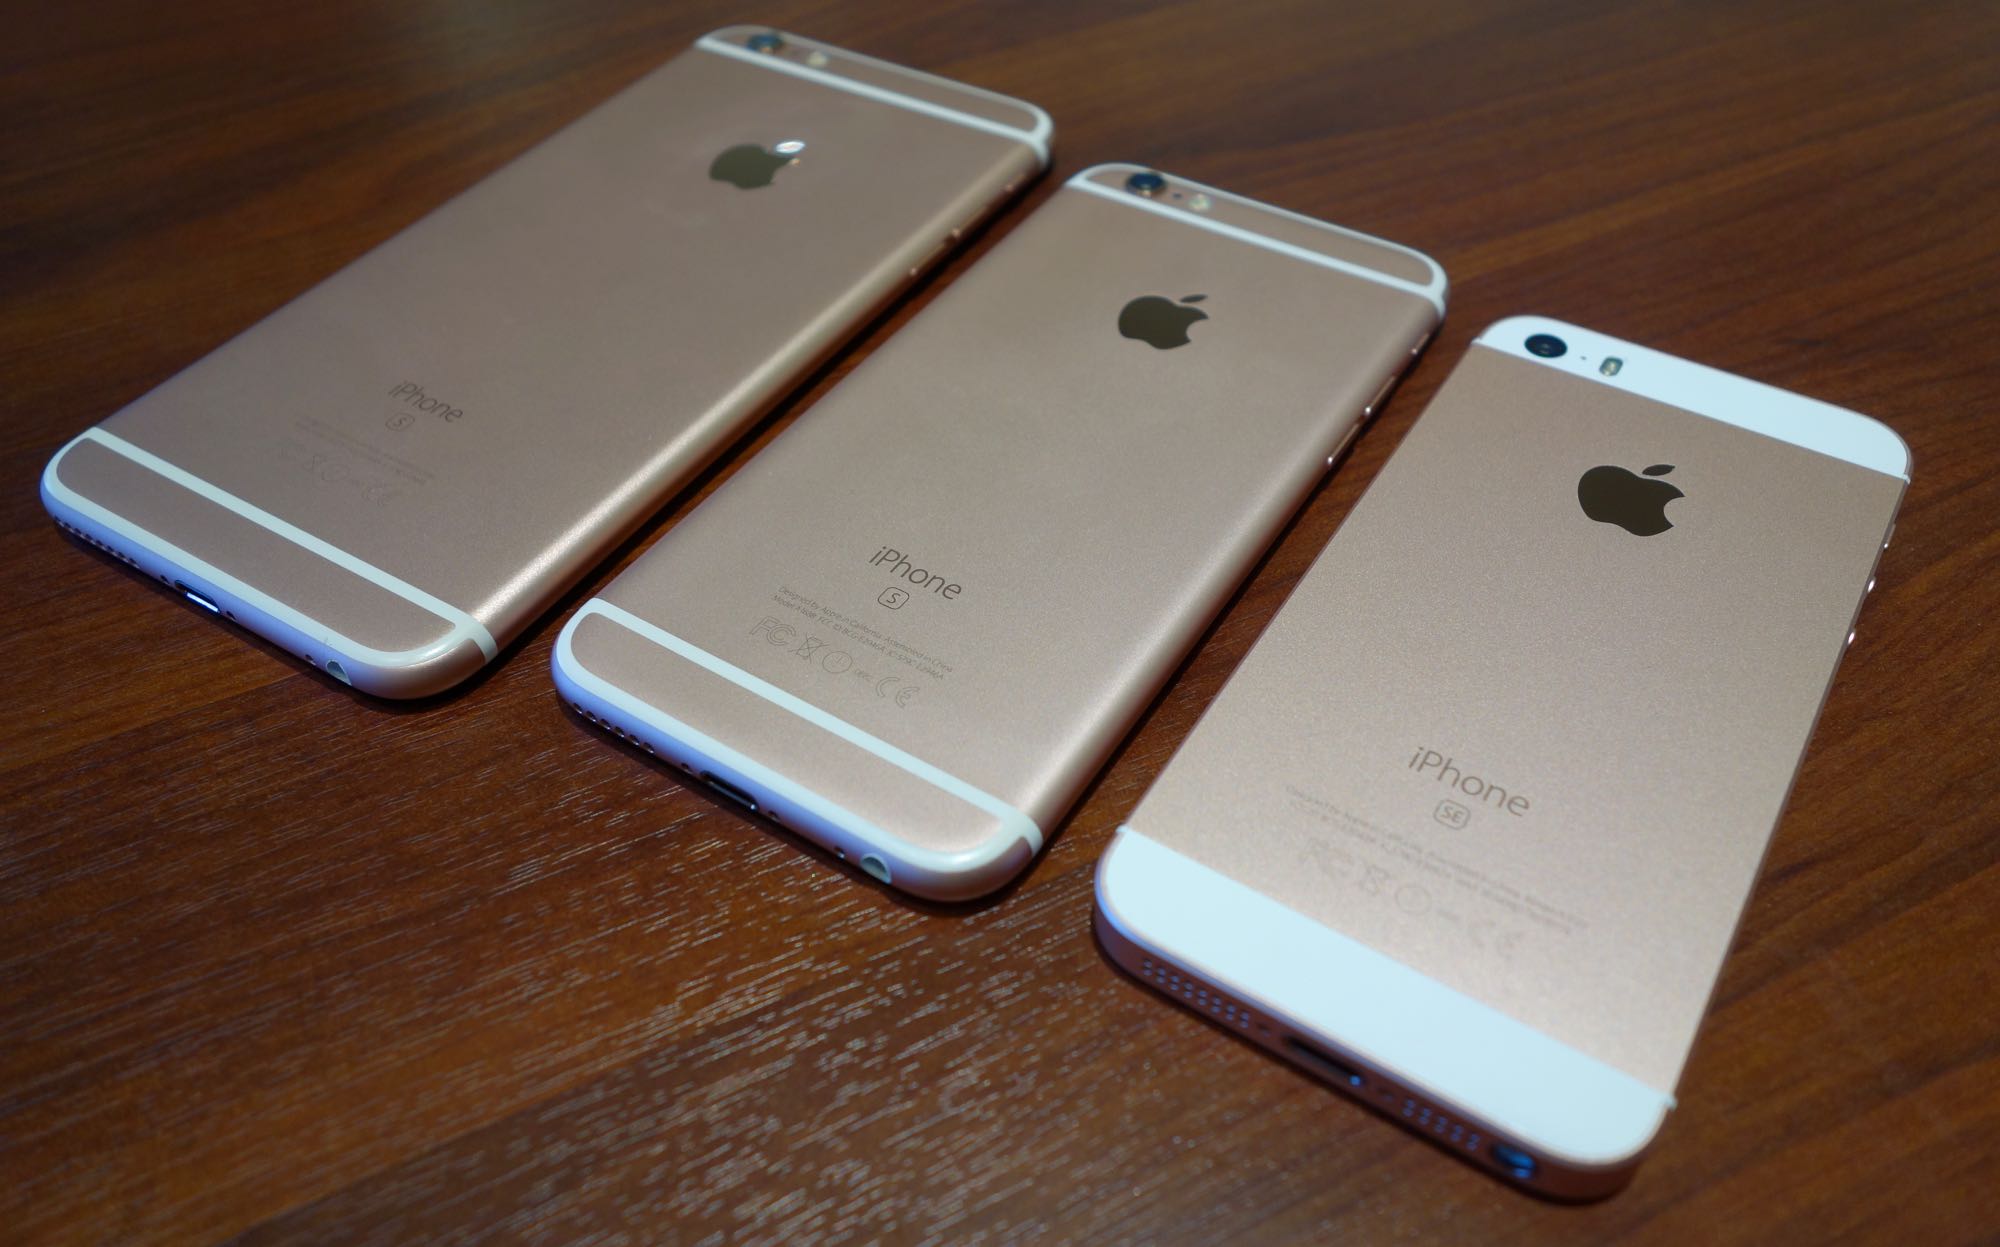 Iphone Seフォトレビュー Iphone 5sとの細部の違いやローズゴールドの色味をチェック ガジェットショット